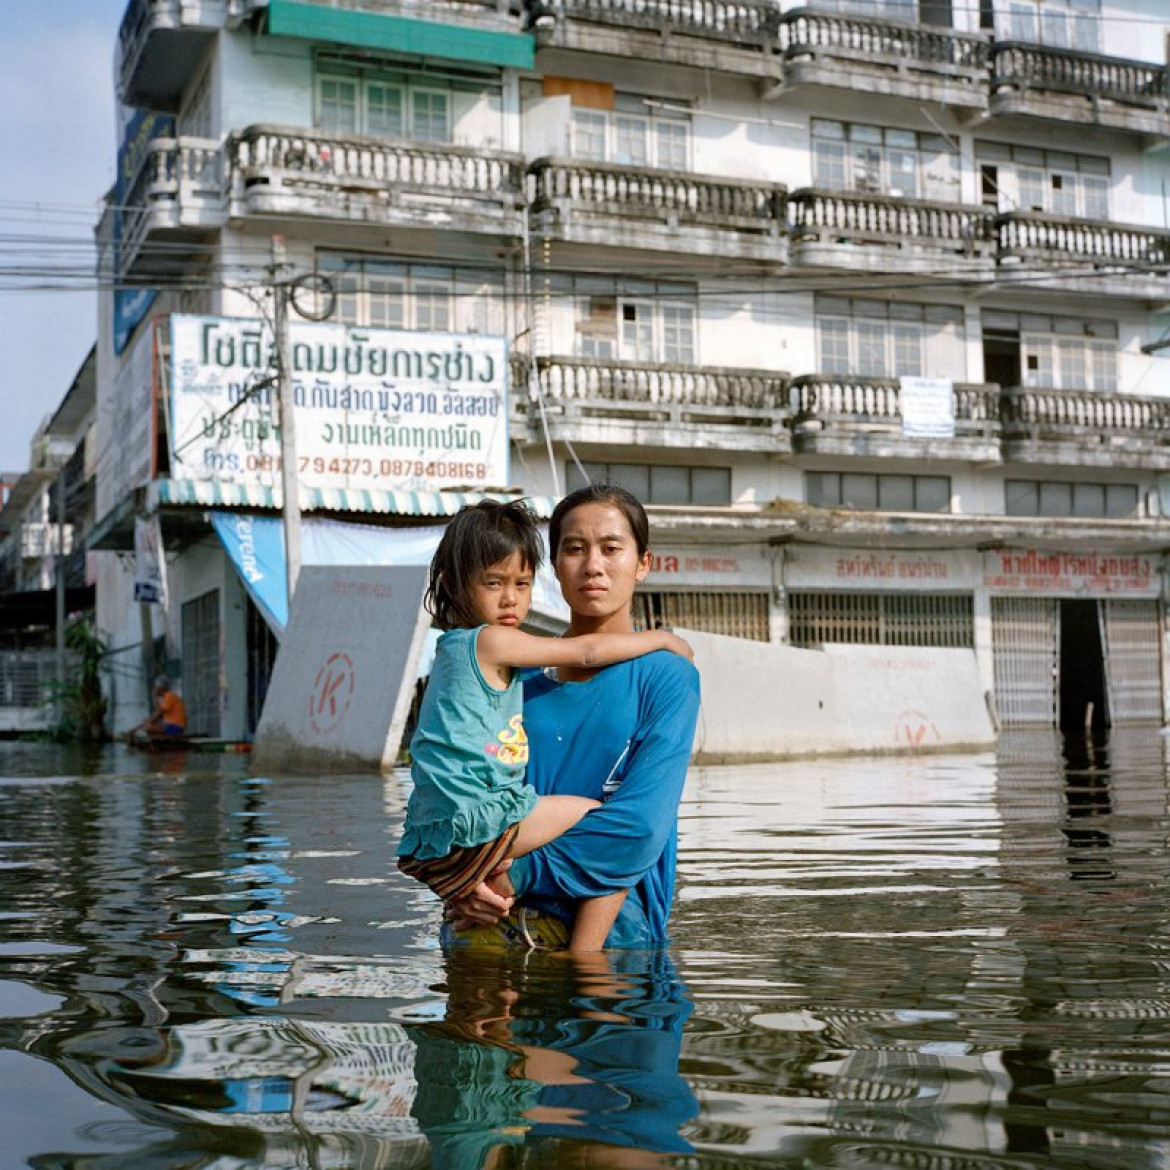 fot. Gideon Mendel, z cyklu "Drowning World"

- Woda zabrała wszystko, prócz ich życia - opowiada o serii fotograf. Długoterminowy projekt Mendela przedstawia ofiary powodzi z całego świata.